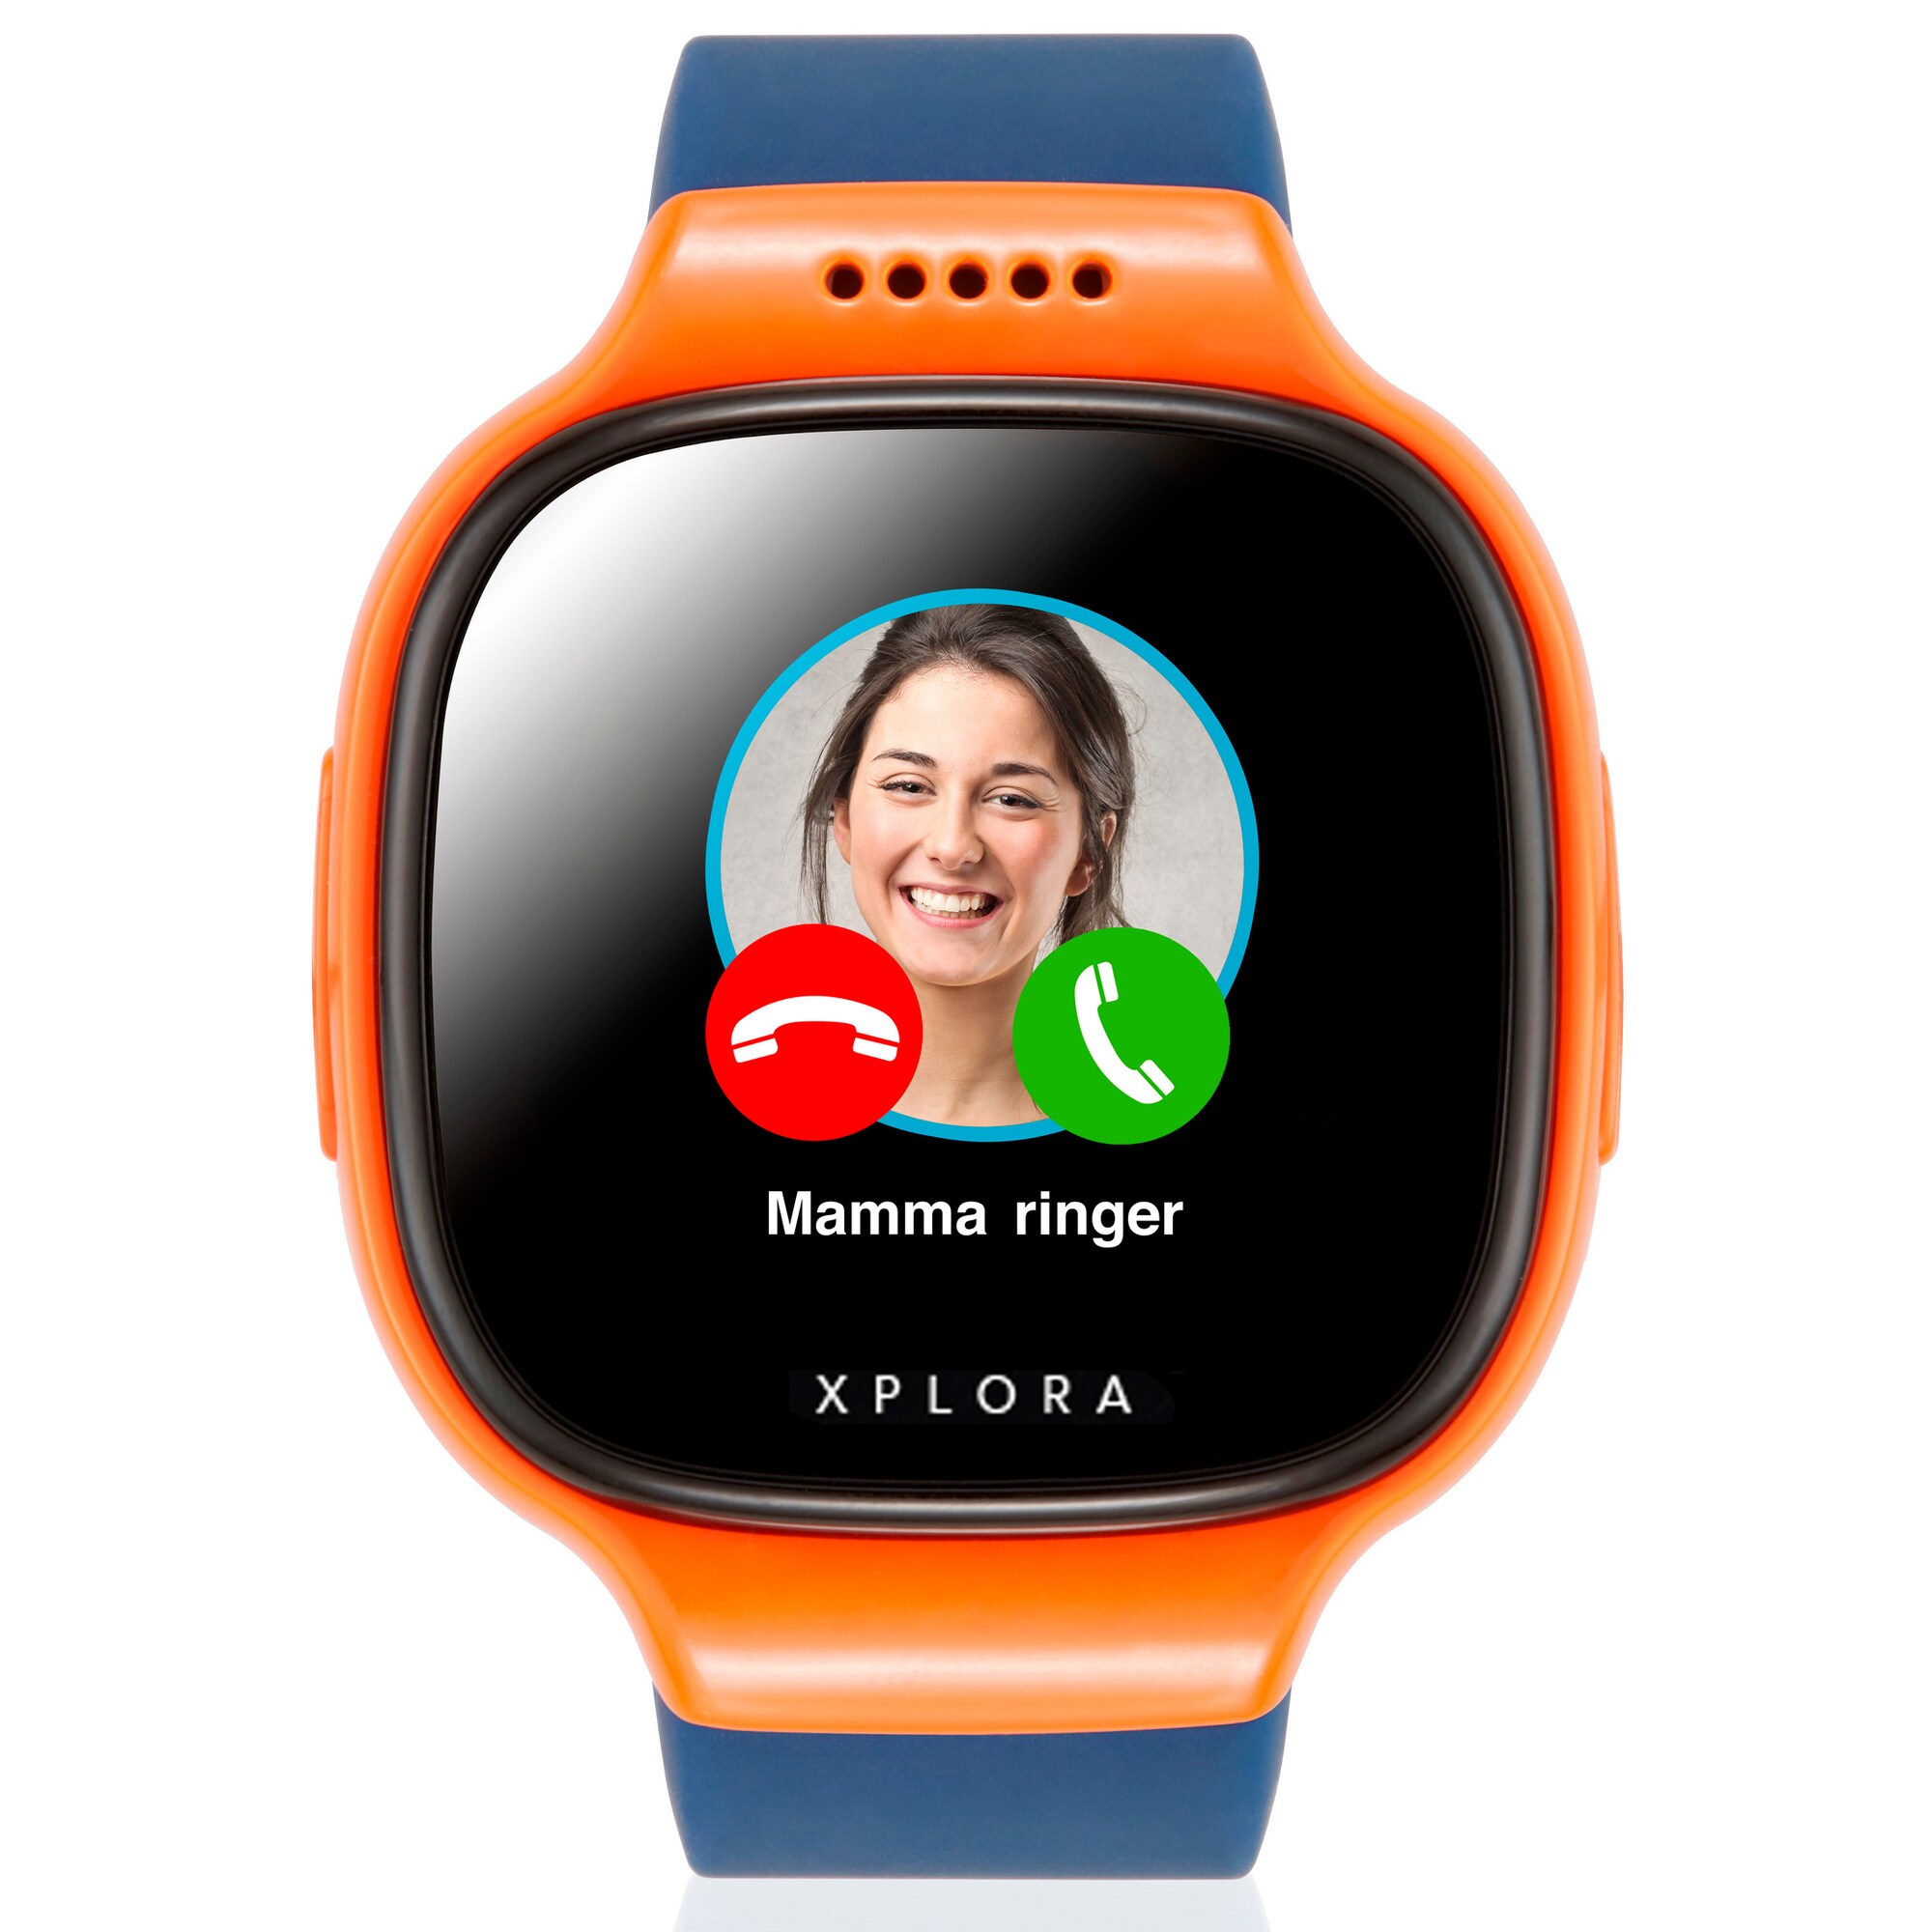 Lad barnets første mobil være et smartwatch - Elgiganten